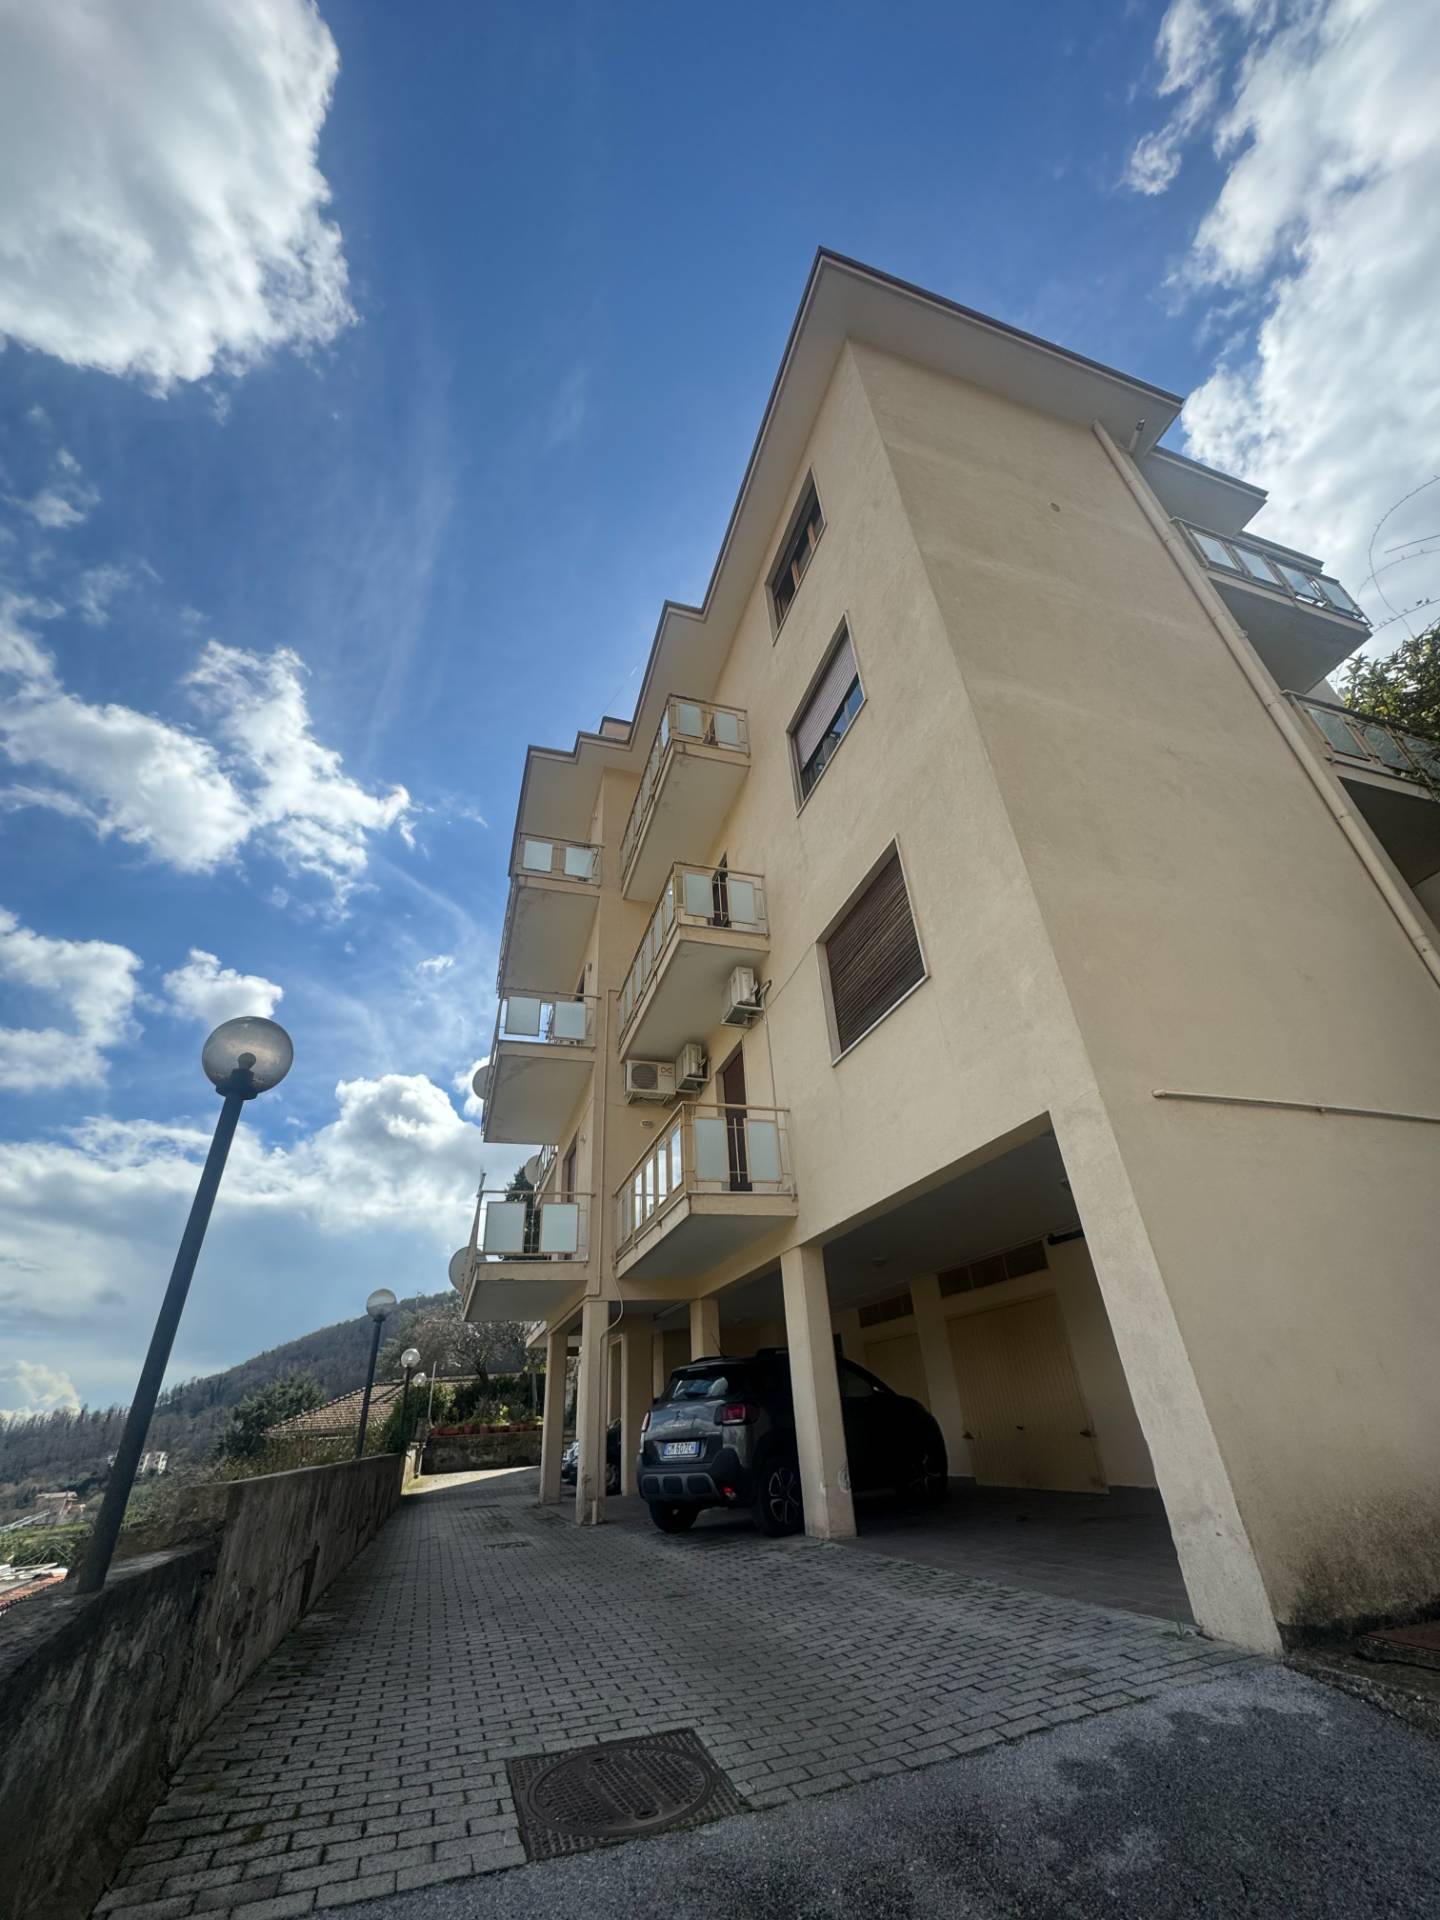 Appartamento in vendita a Pellezzano, 3 locali, prezzo € 130.000 | PortaleAgenzieImmobiliari.it